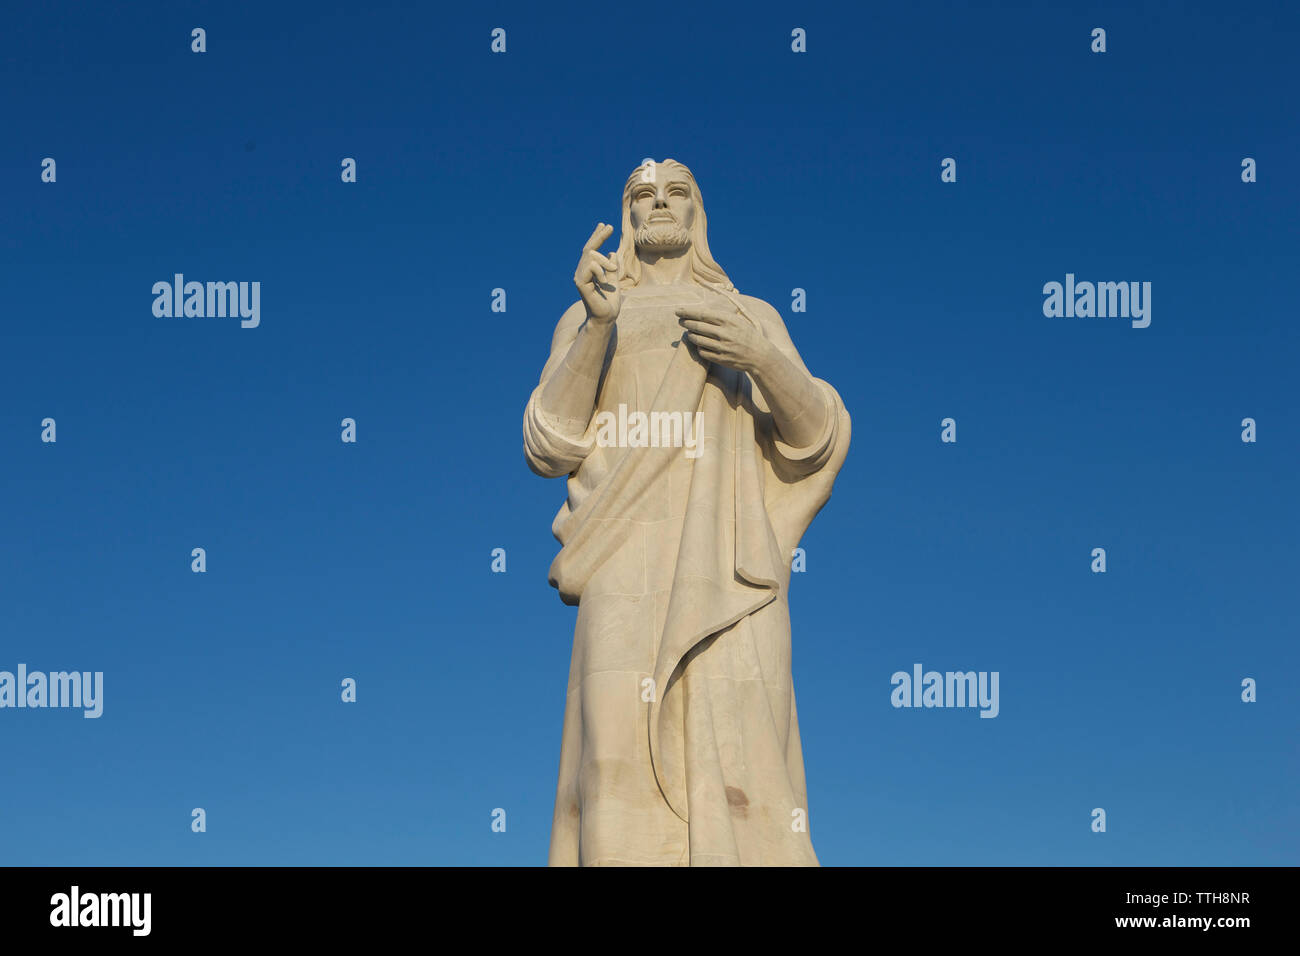 Low angle view of Jesus Christ statue contre le ciel bleu clair au cours de journée ensoleillée Banque D'Images